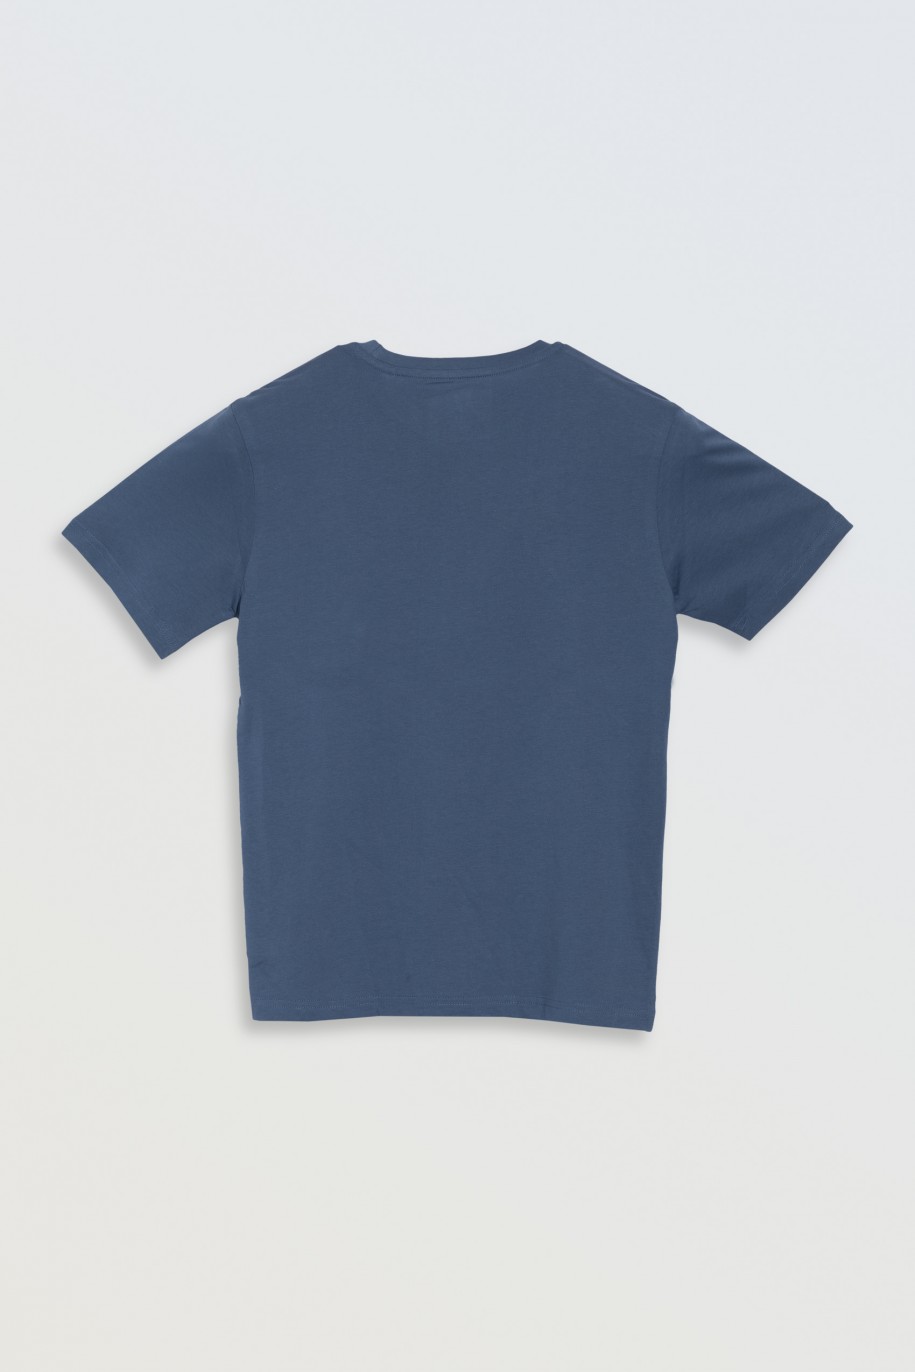 Niebieski t-shirt z kolorowym nadrukiem na wysokości piersi - 47078